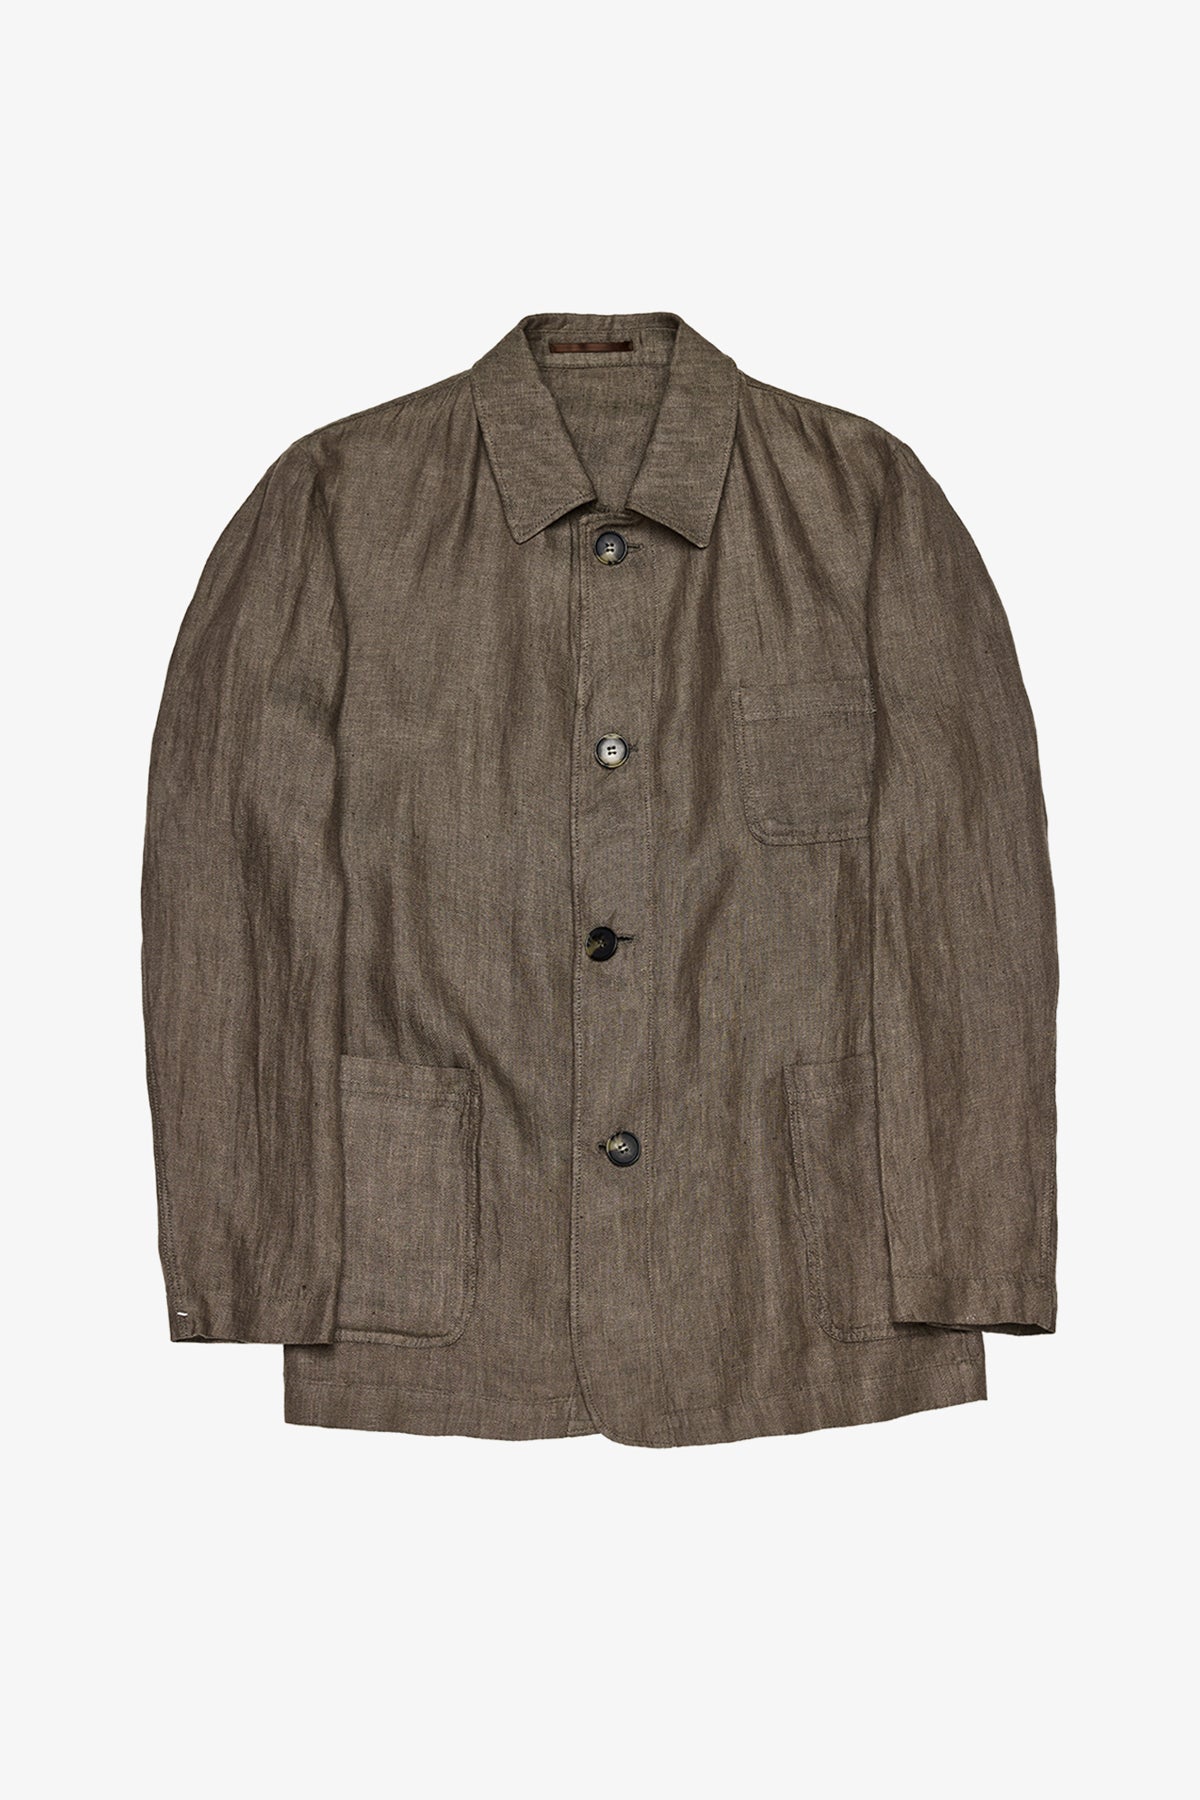 Carter - Brown Shirt Jacket